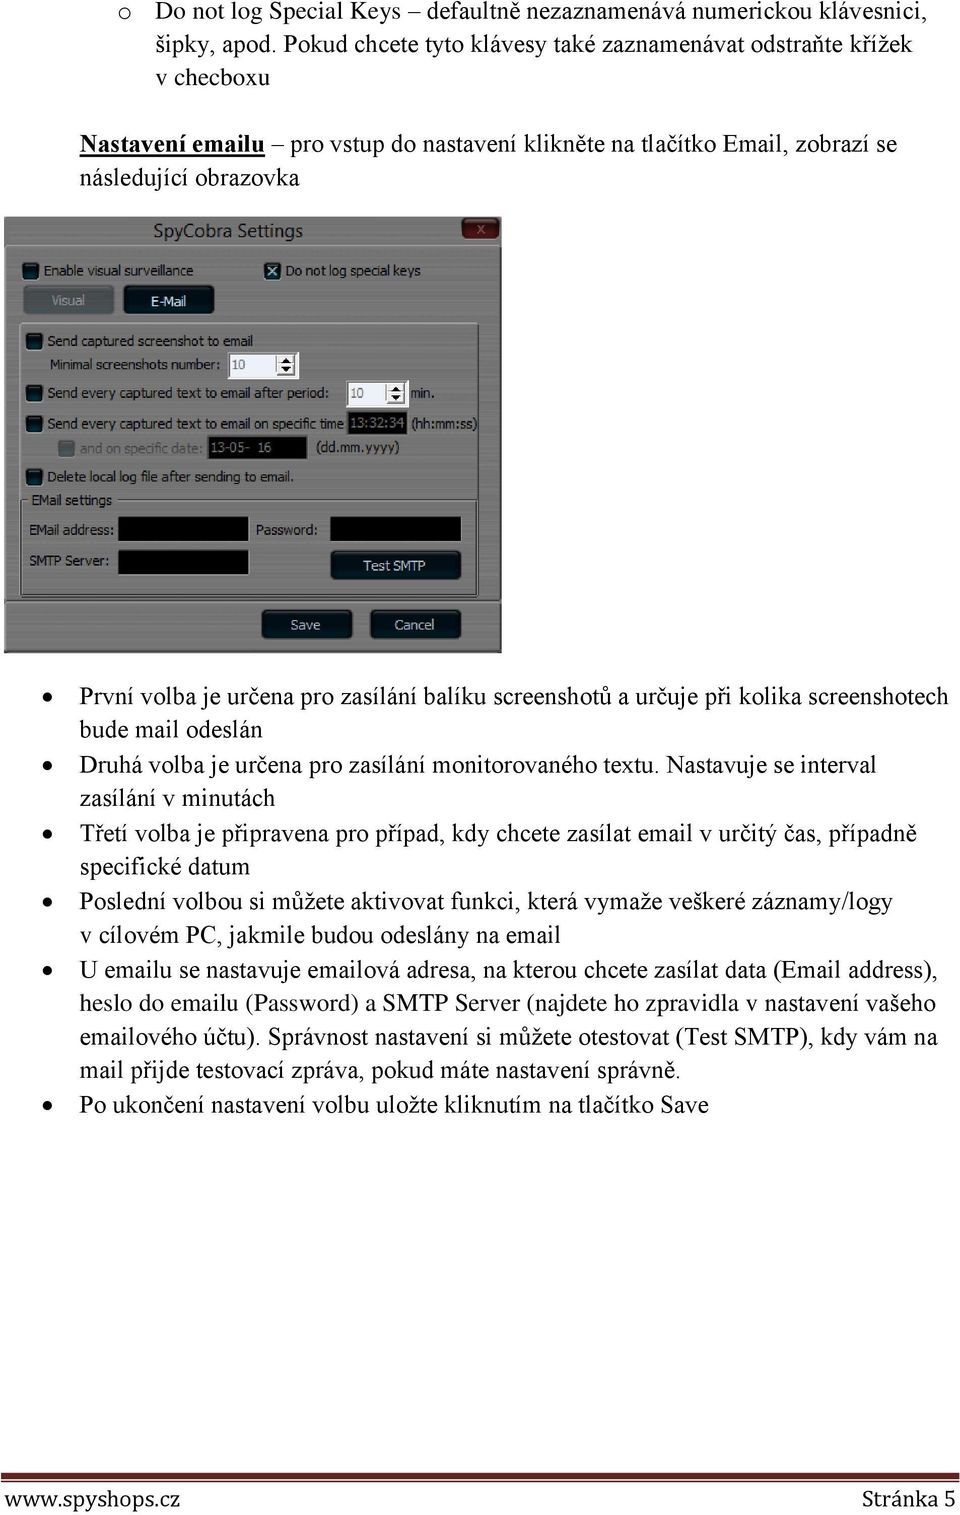 zasílání balíku screenshotů a určuje při kolika screenshotech bude mail odeslán Druhá volba je určena pro zasílání monitorovaného textu.